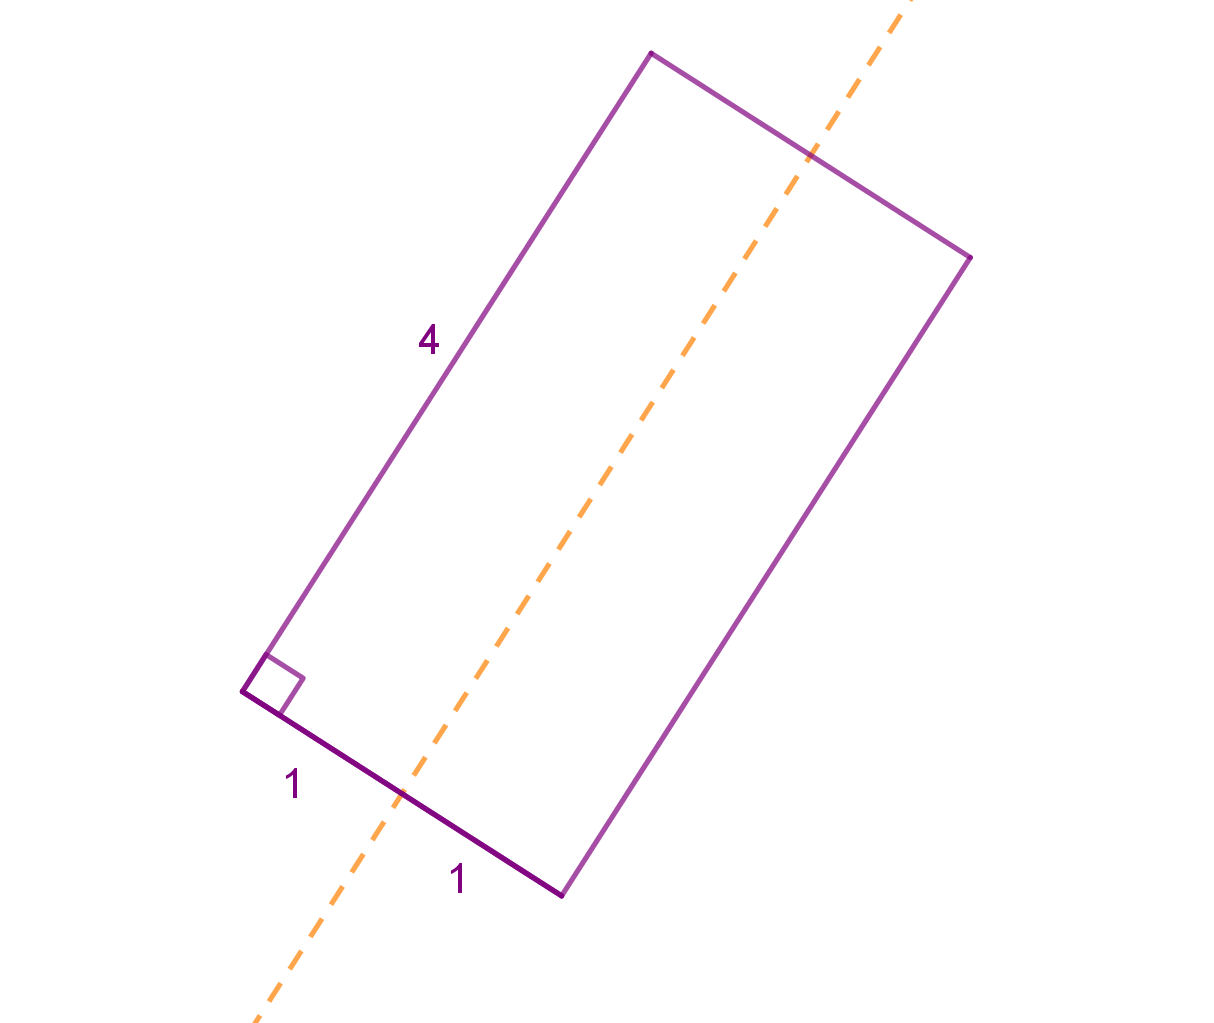 Pravokutnik stranica 2 i 4 rotira oko osi koja prolazi kroz polovišta kraćih stranica.